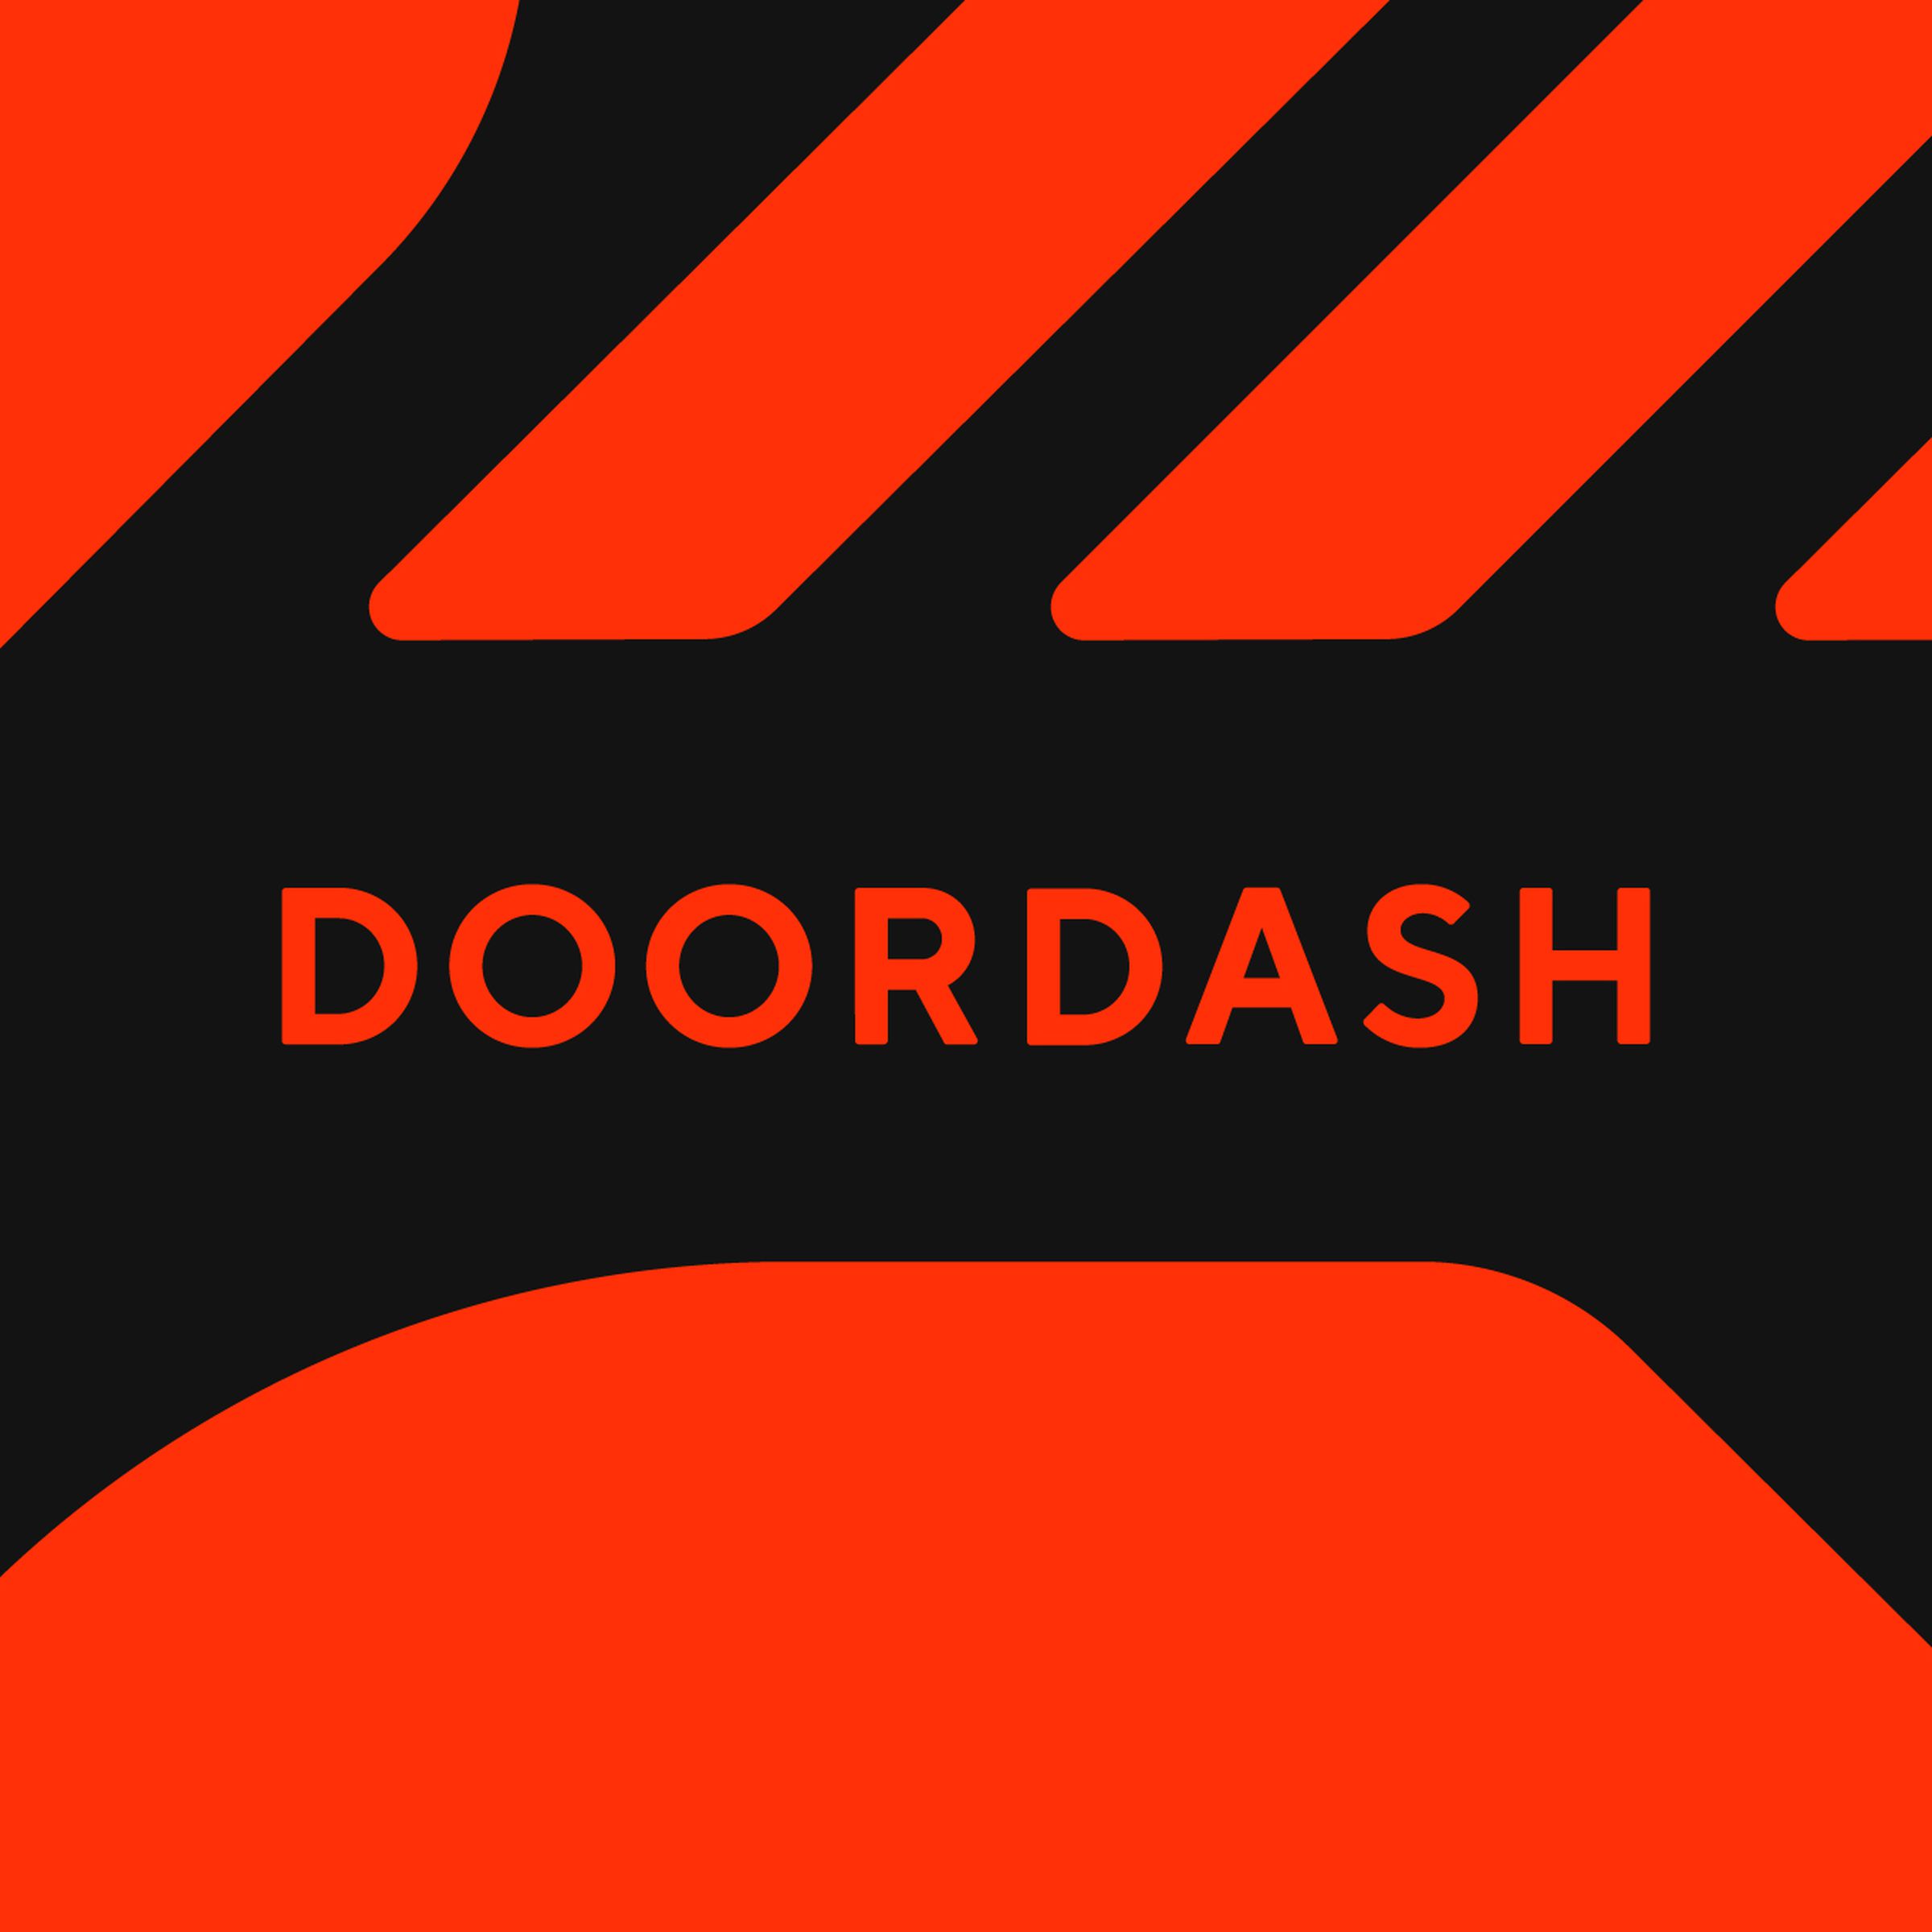 An image showing the DoorDash logo